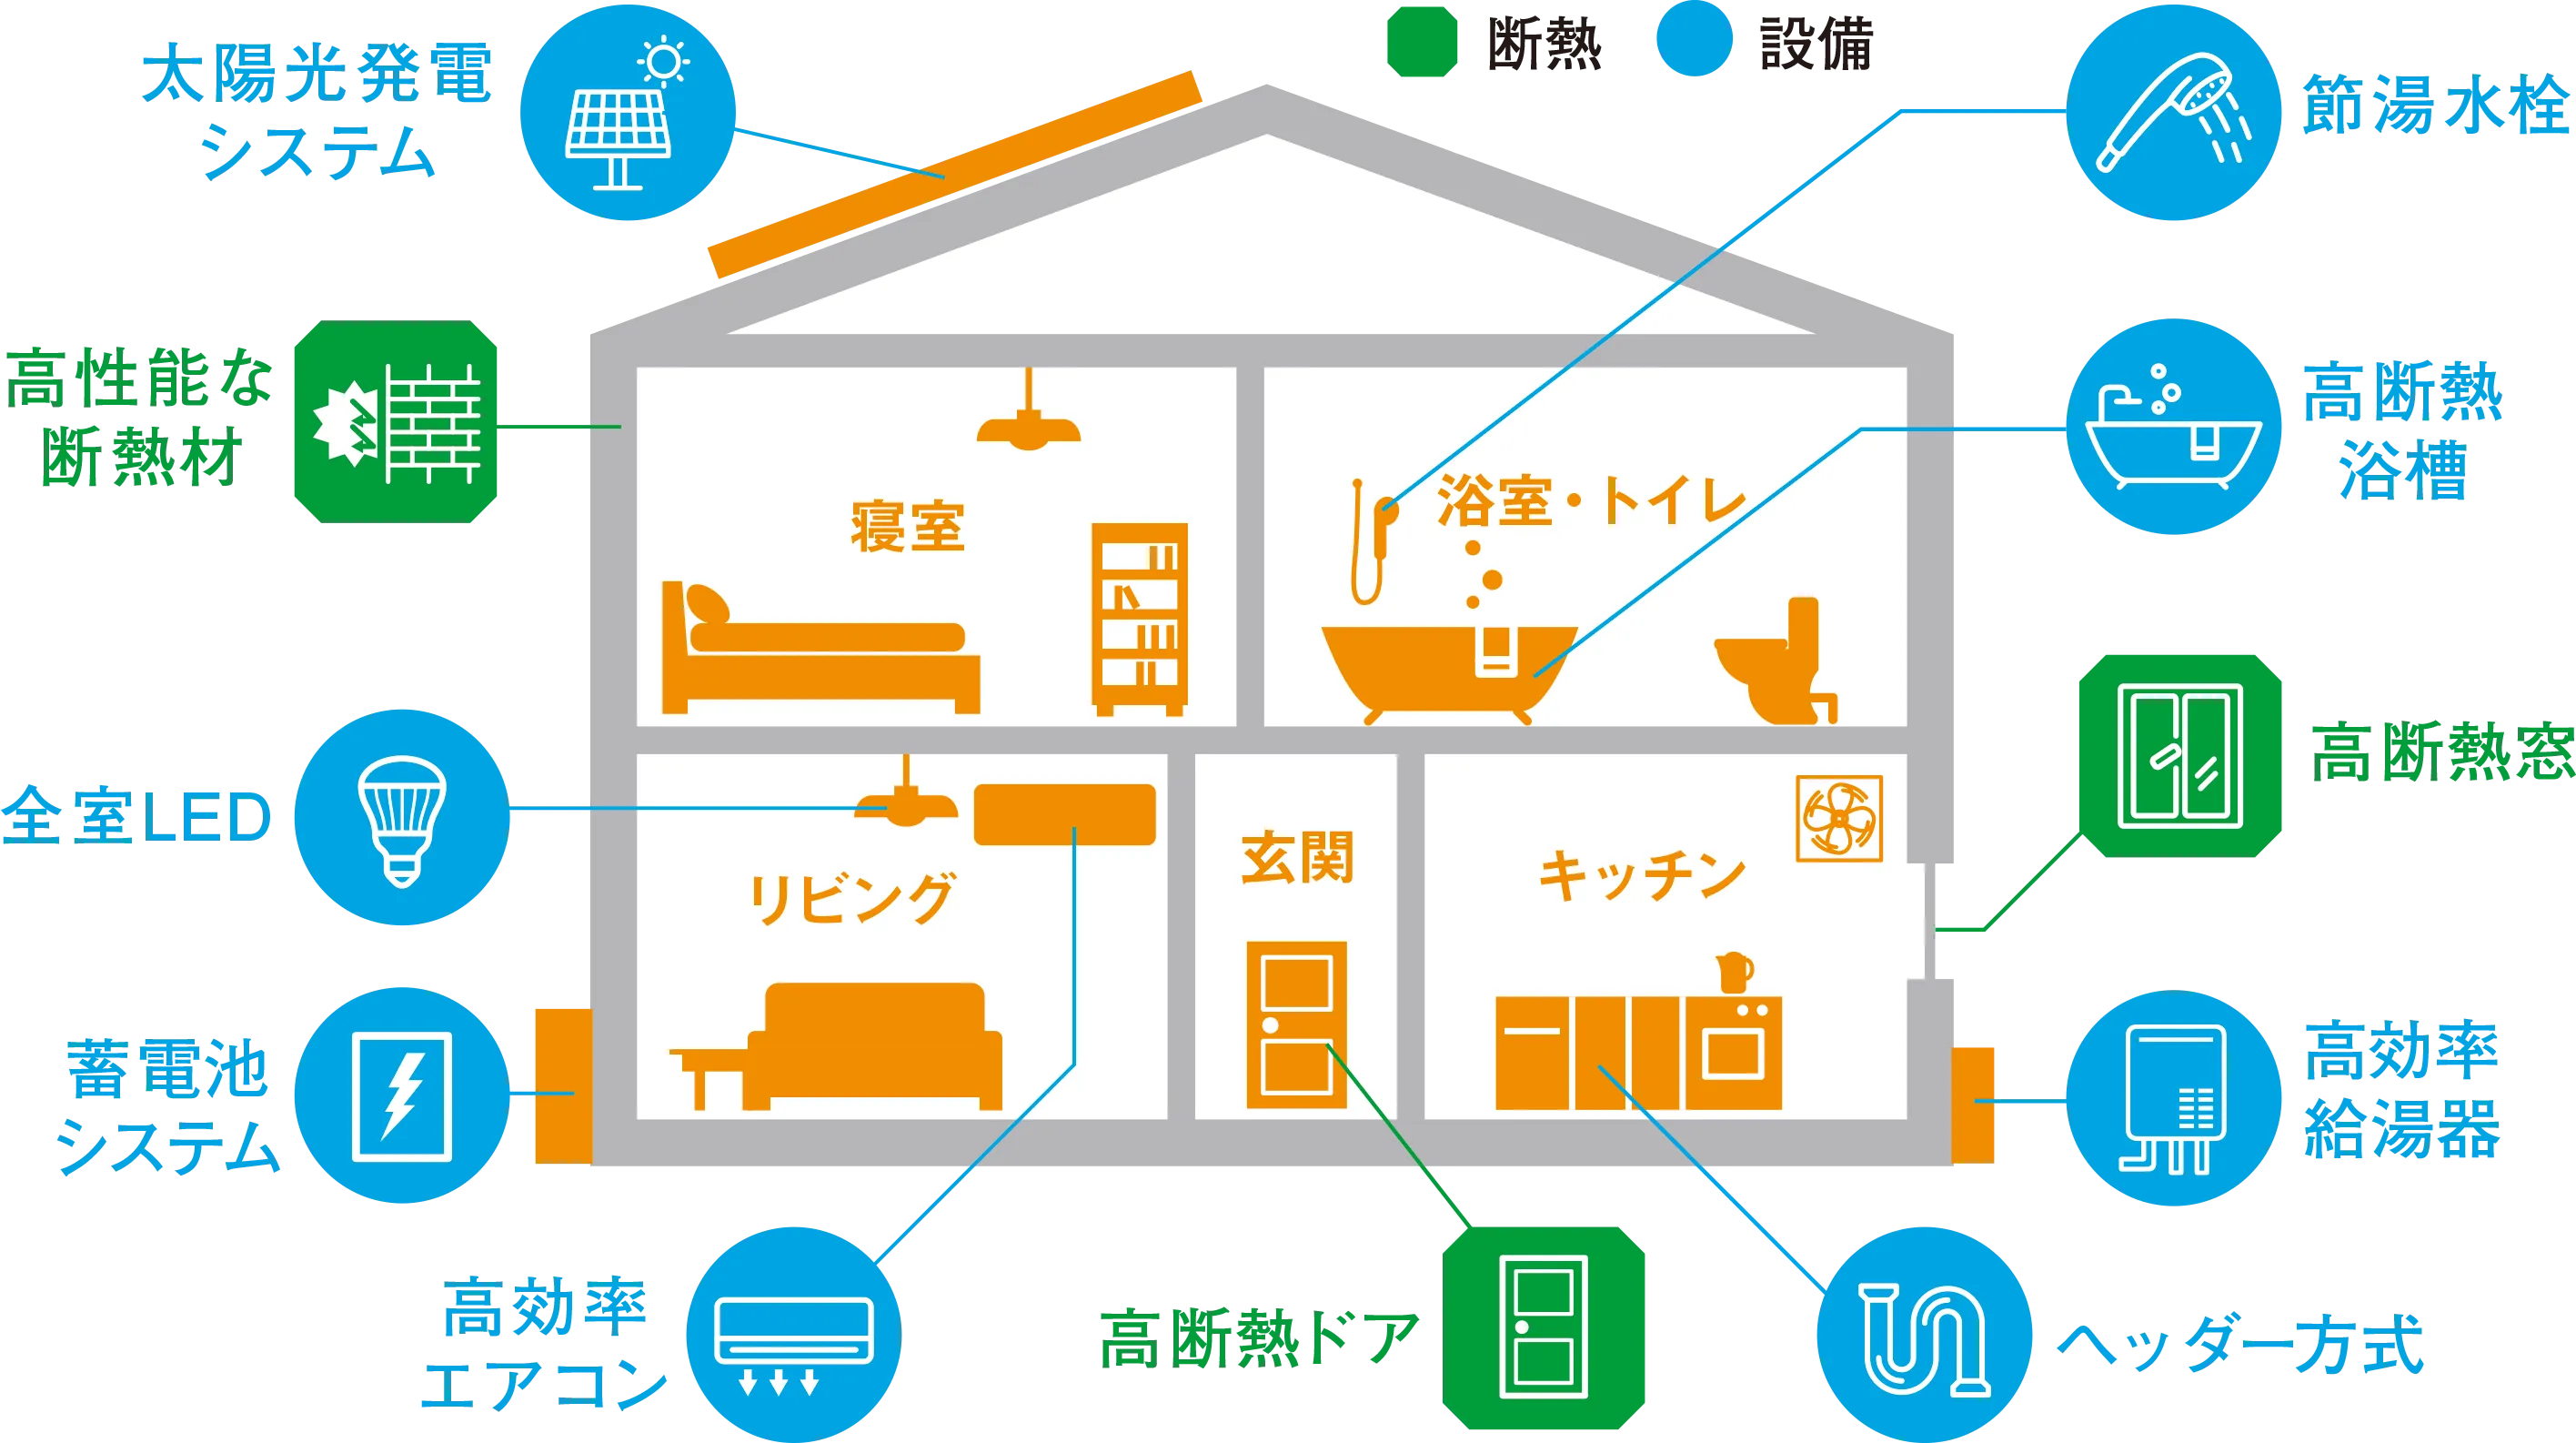 「東京ゼロエミ住宅」でポイントとなる、断熱と設備についてまとめた概念図